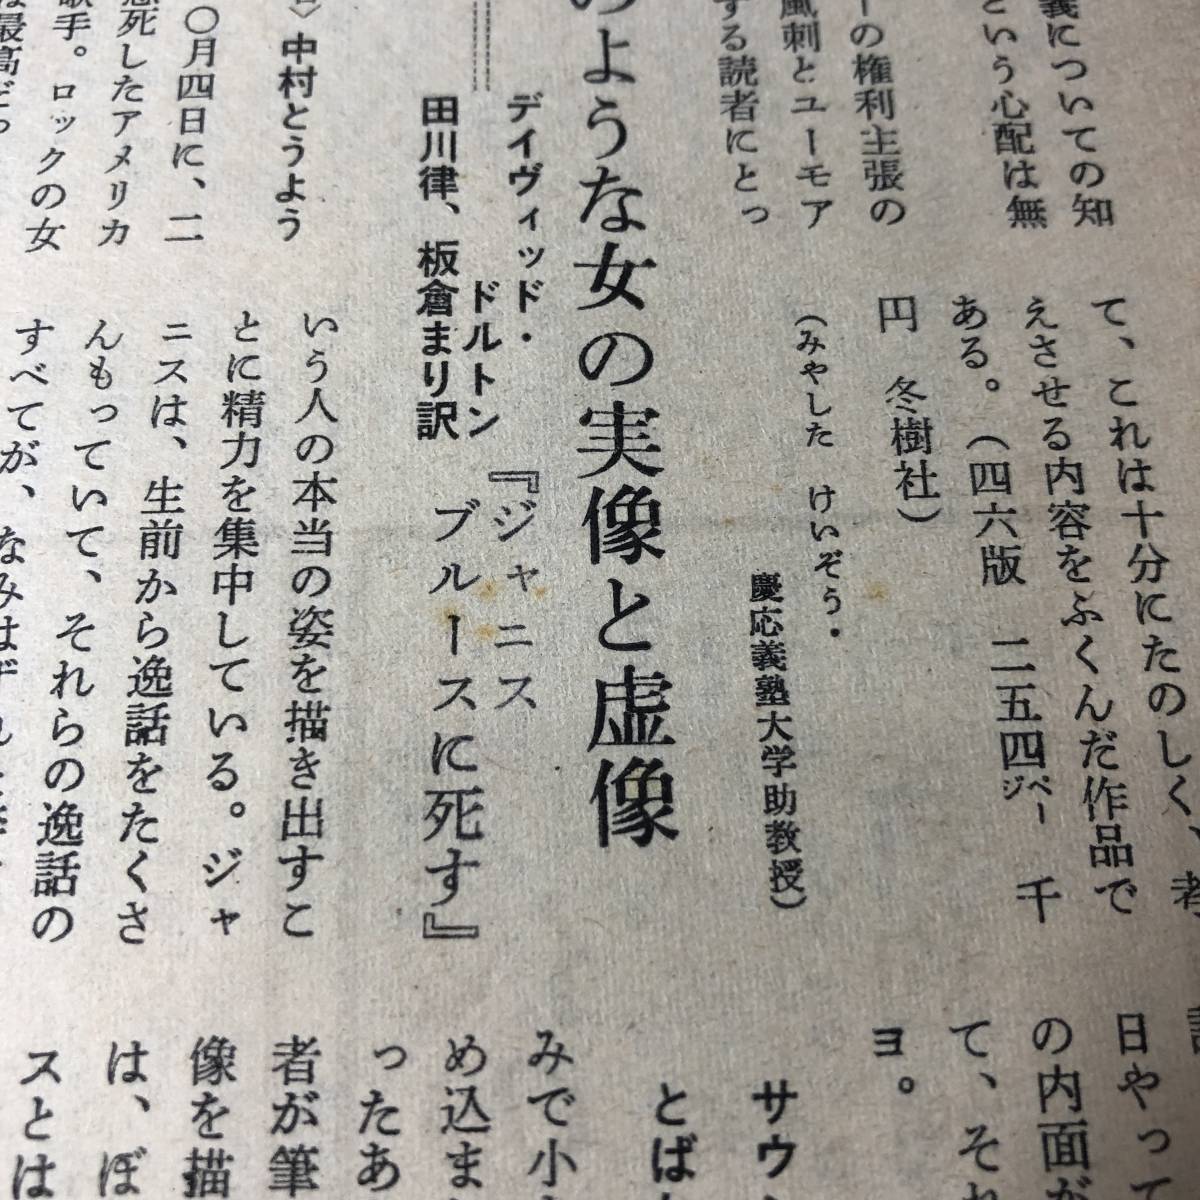 A01【ゆうメール送料無料】朝日ジャーナル 1973年8月10日号 VOL.15 NO.31の画像7